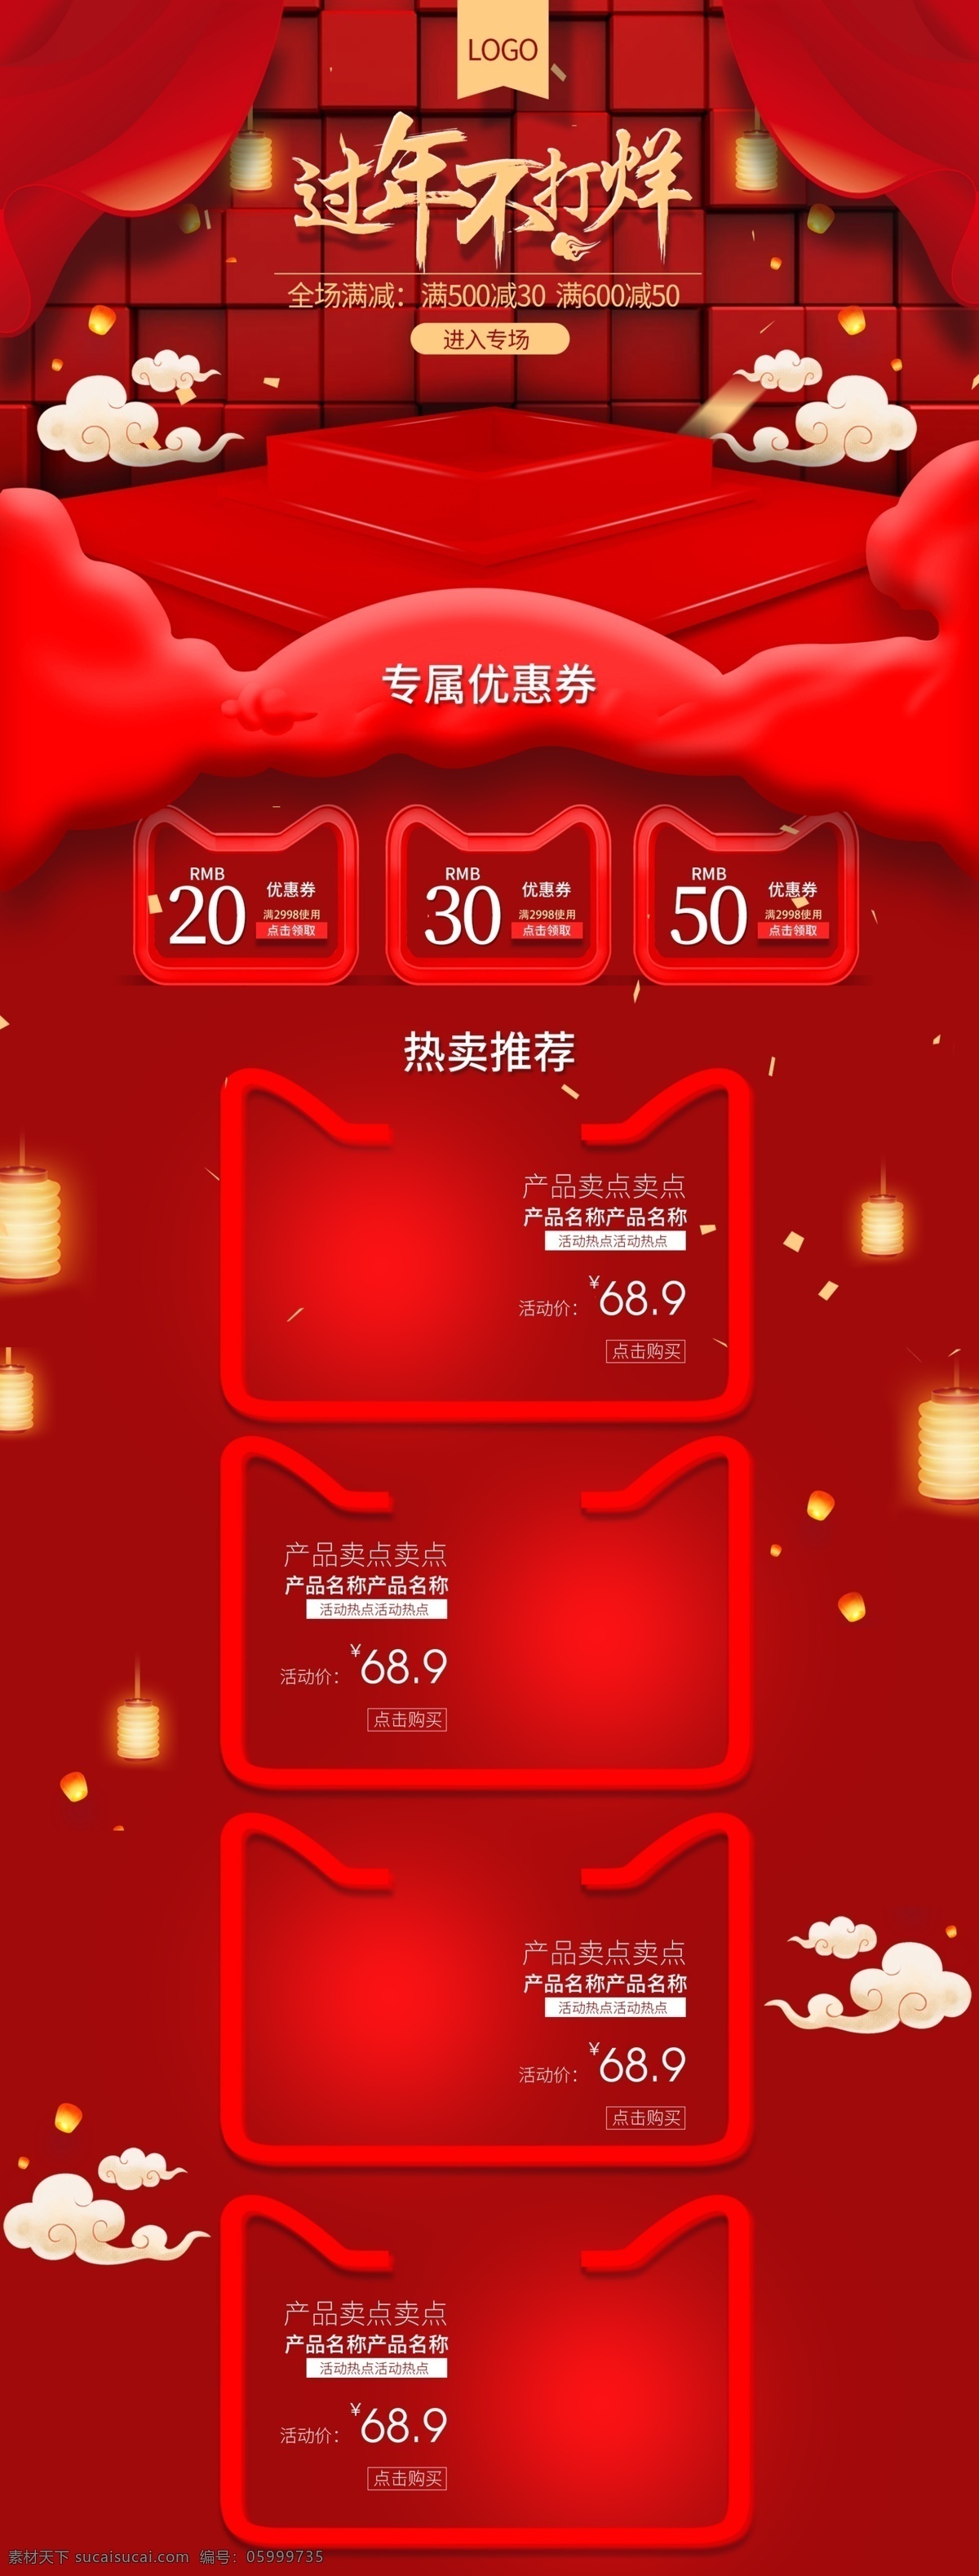 红色 立体 首页 年货 节 喜庆 年货节 中国风 年货合家欢 天猫淘宝